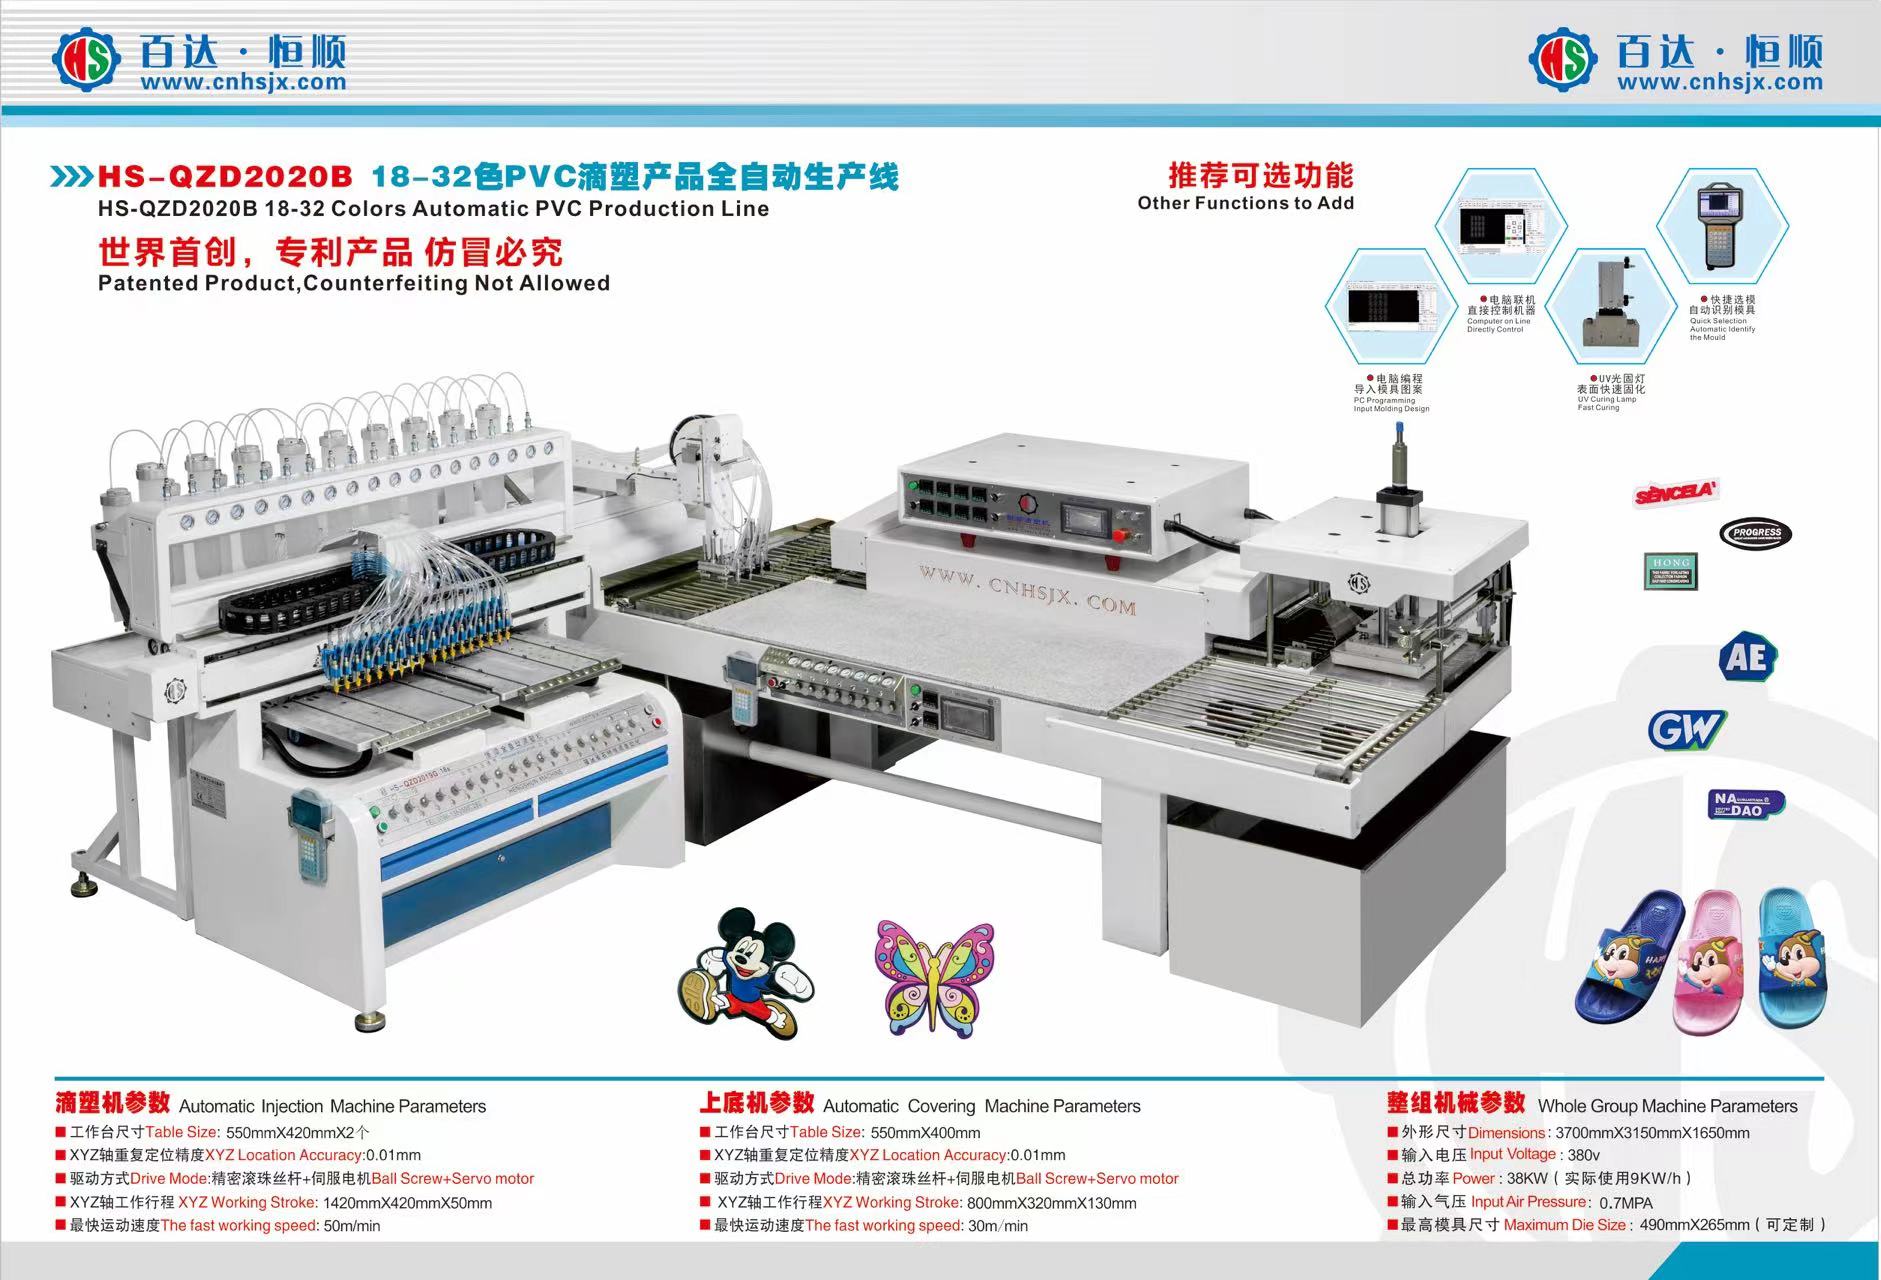 HS-QZD2020B 18-32 Colors Automatic PVC Production Line